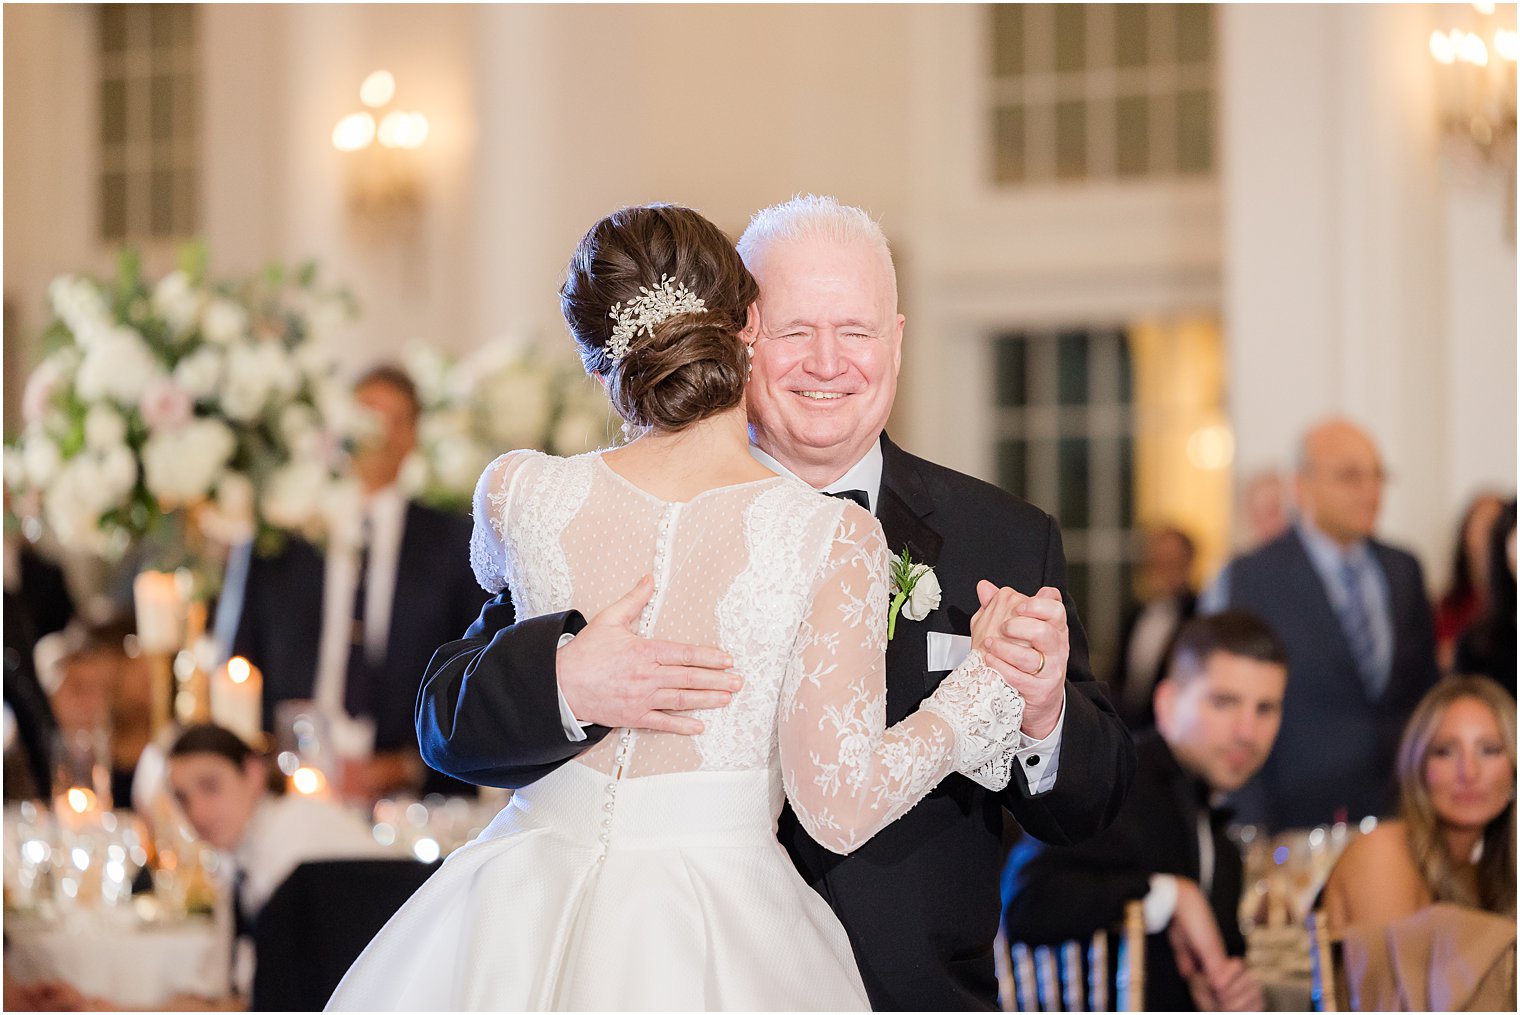 dad grins dancing with bride during NJ wedding reception 